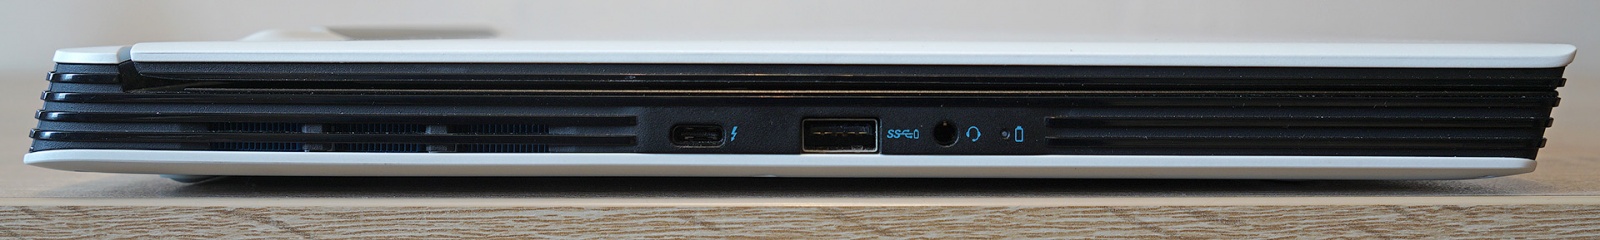 Dell G5 5590: один из самых доступных игровых ноутбуков с RTX 2060 - 11